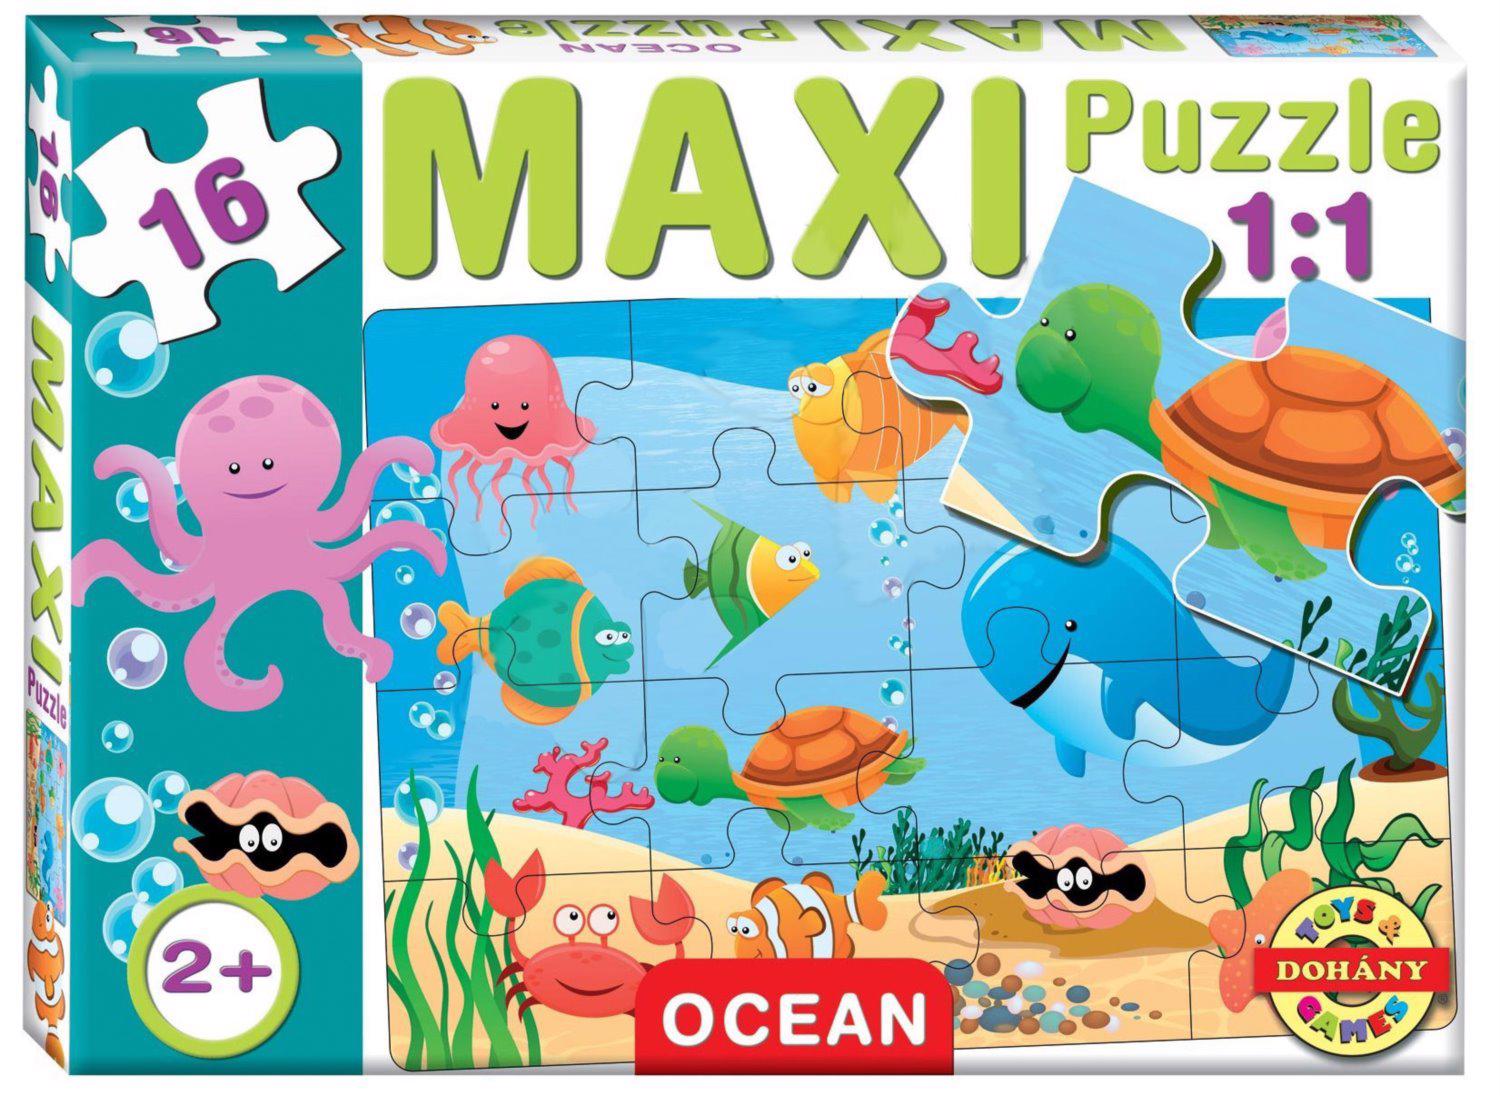 Puzzle Maxi Puzzle Oceano 16